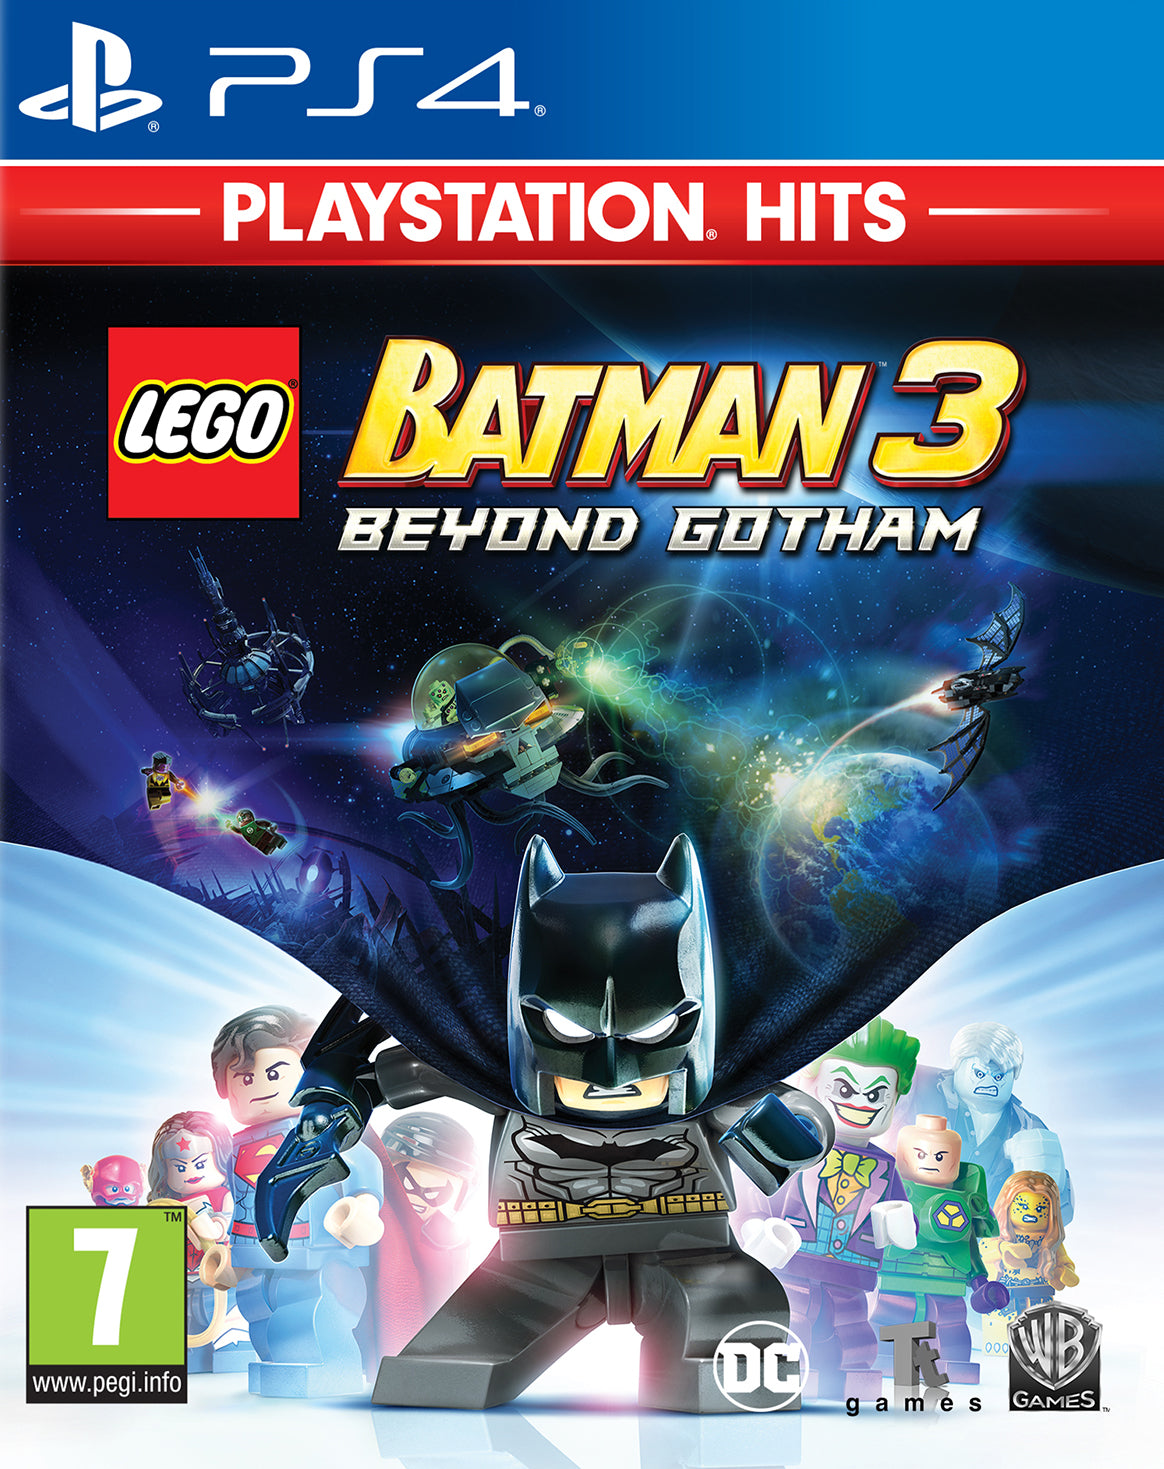 Lego Batman 3 Beyond Gotham Playstation 4 Video Game